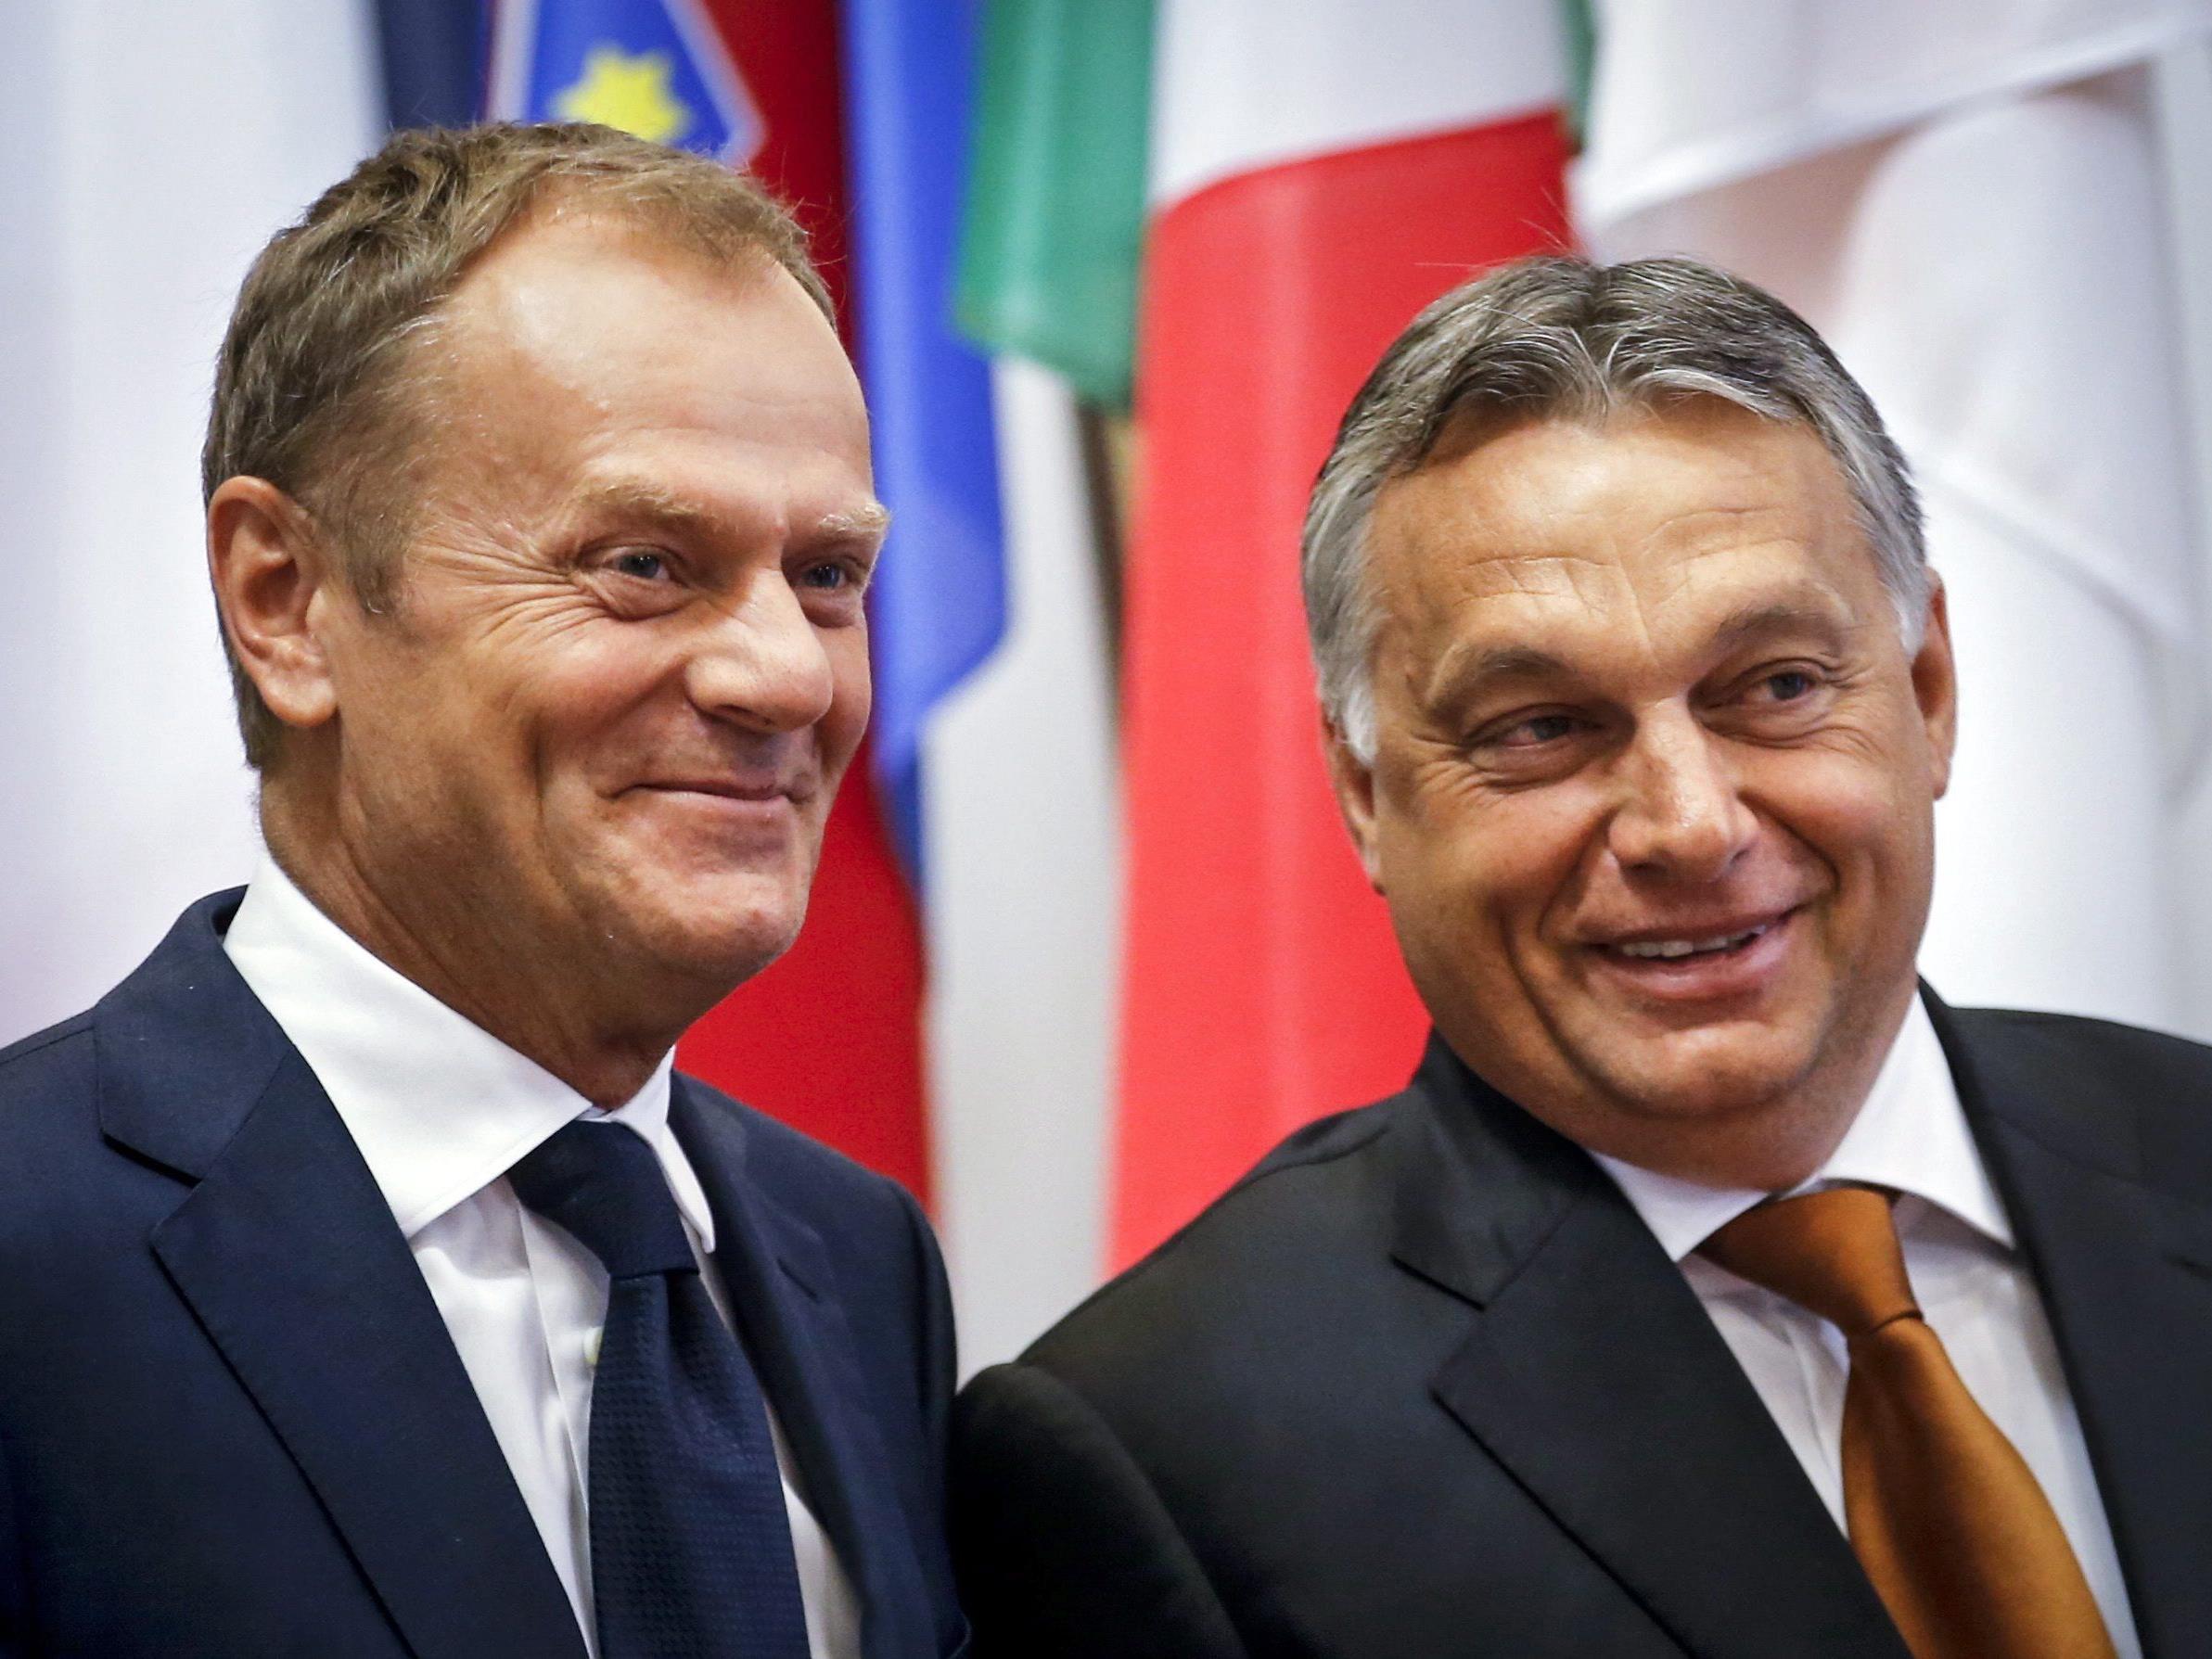 "Herangehensweisen von Solidarität und Eindämmung" schlössen einander nicht aus, meint Donald Tusk (l.) beim Treffen mit Viktor Orban.